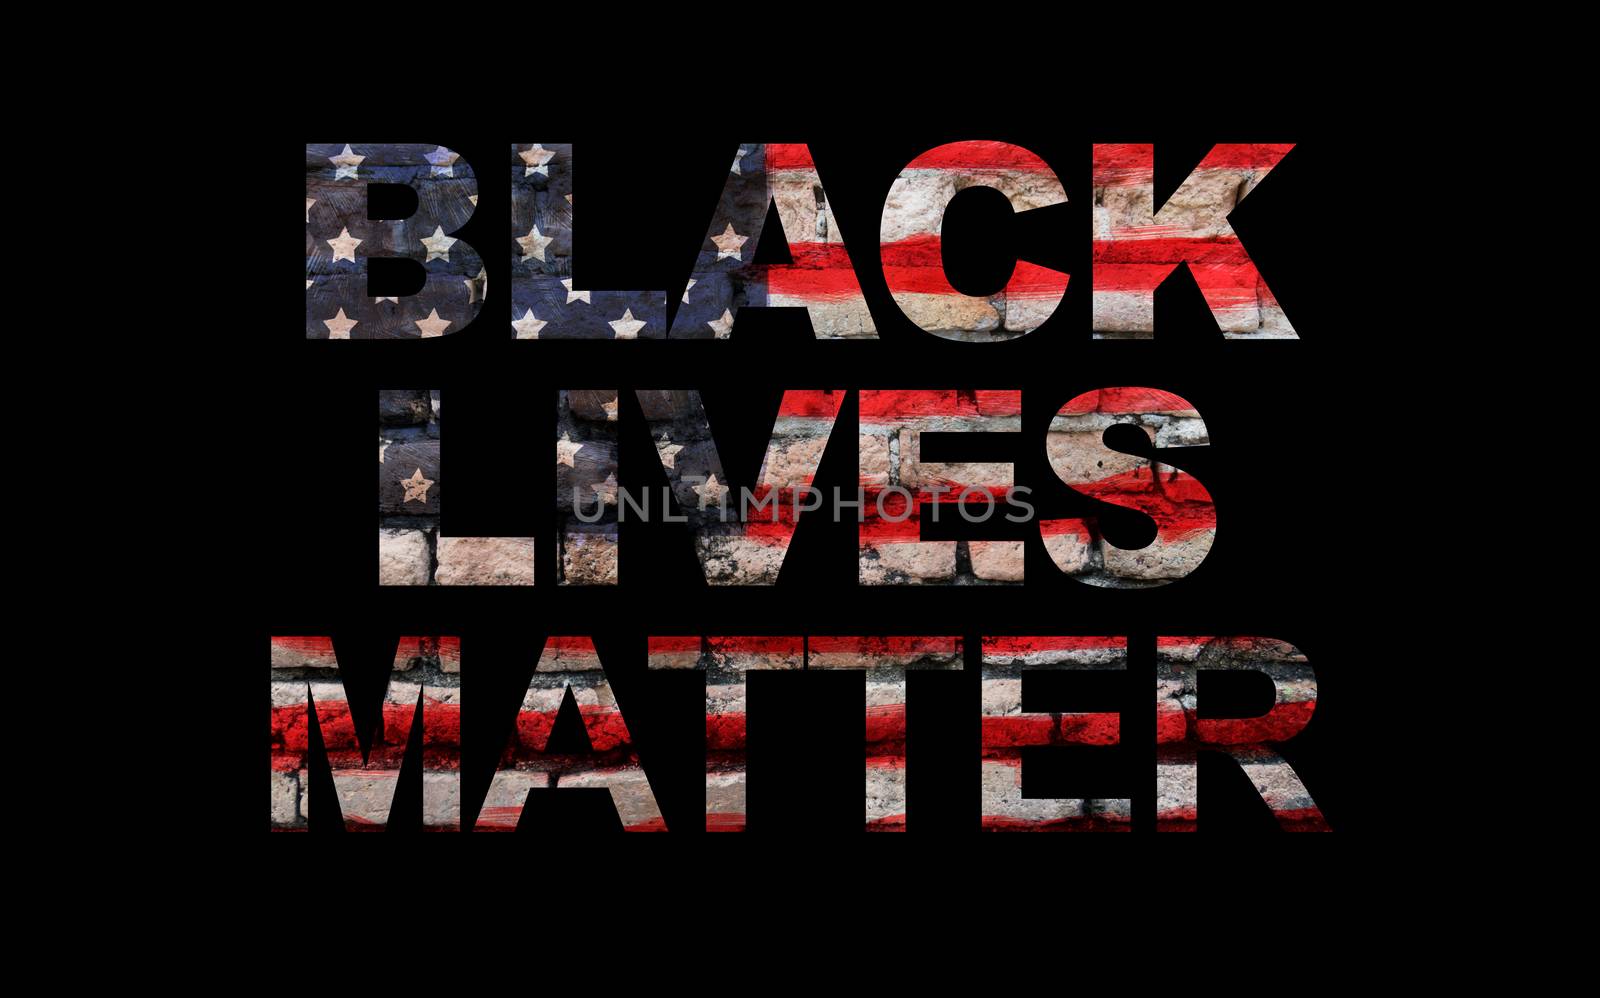 Black lives matter slogan on American flag, black background